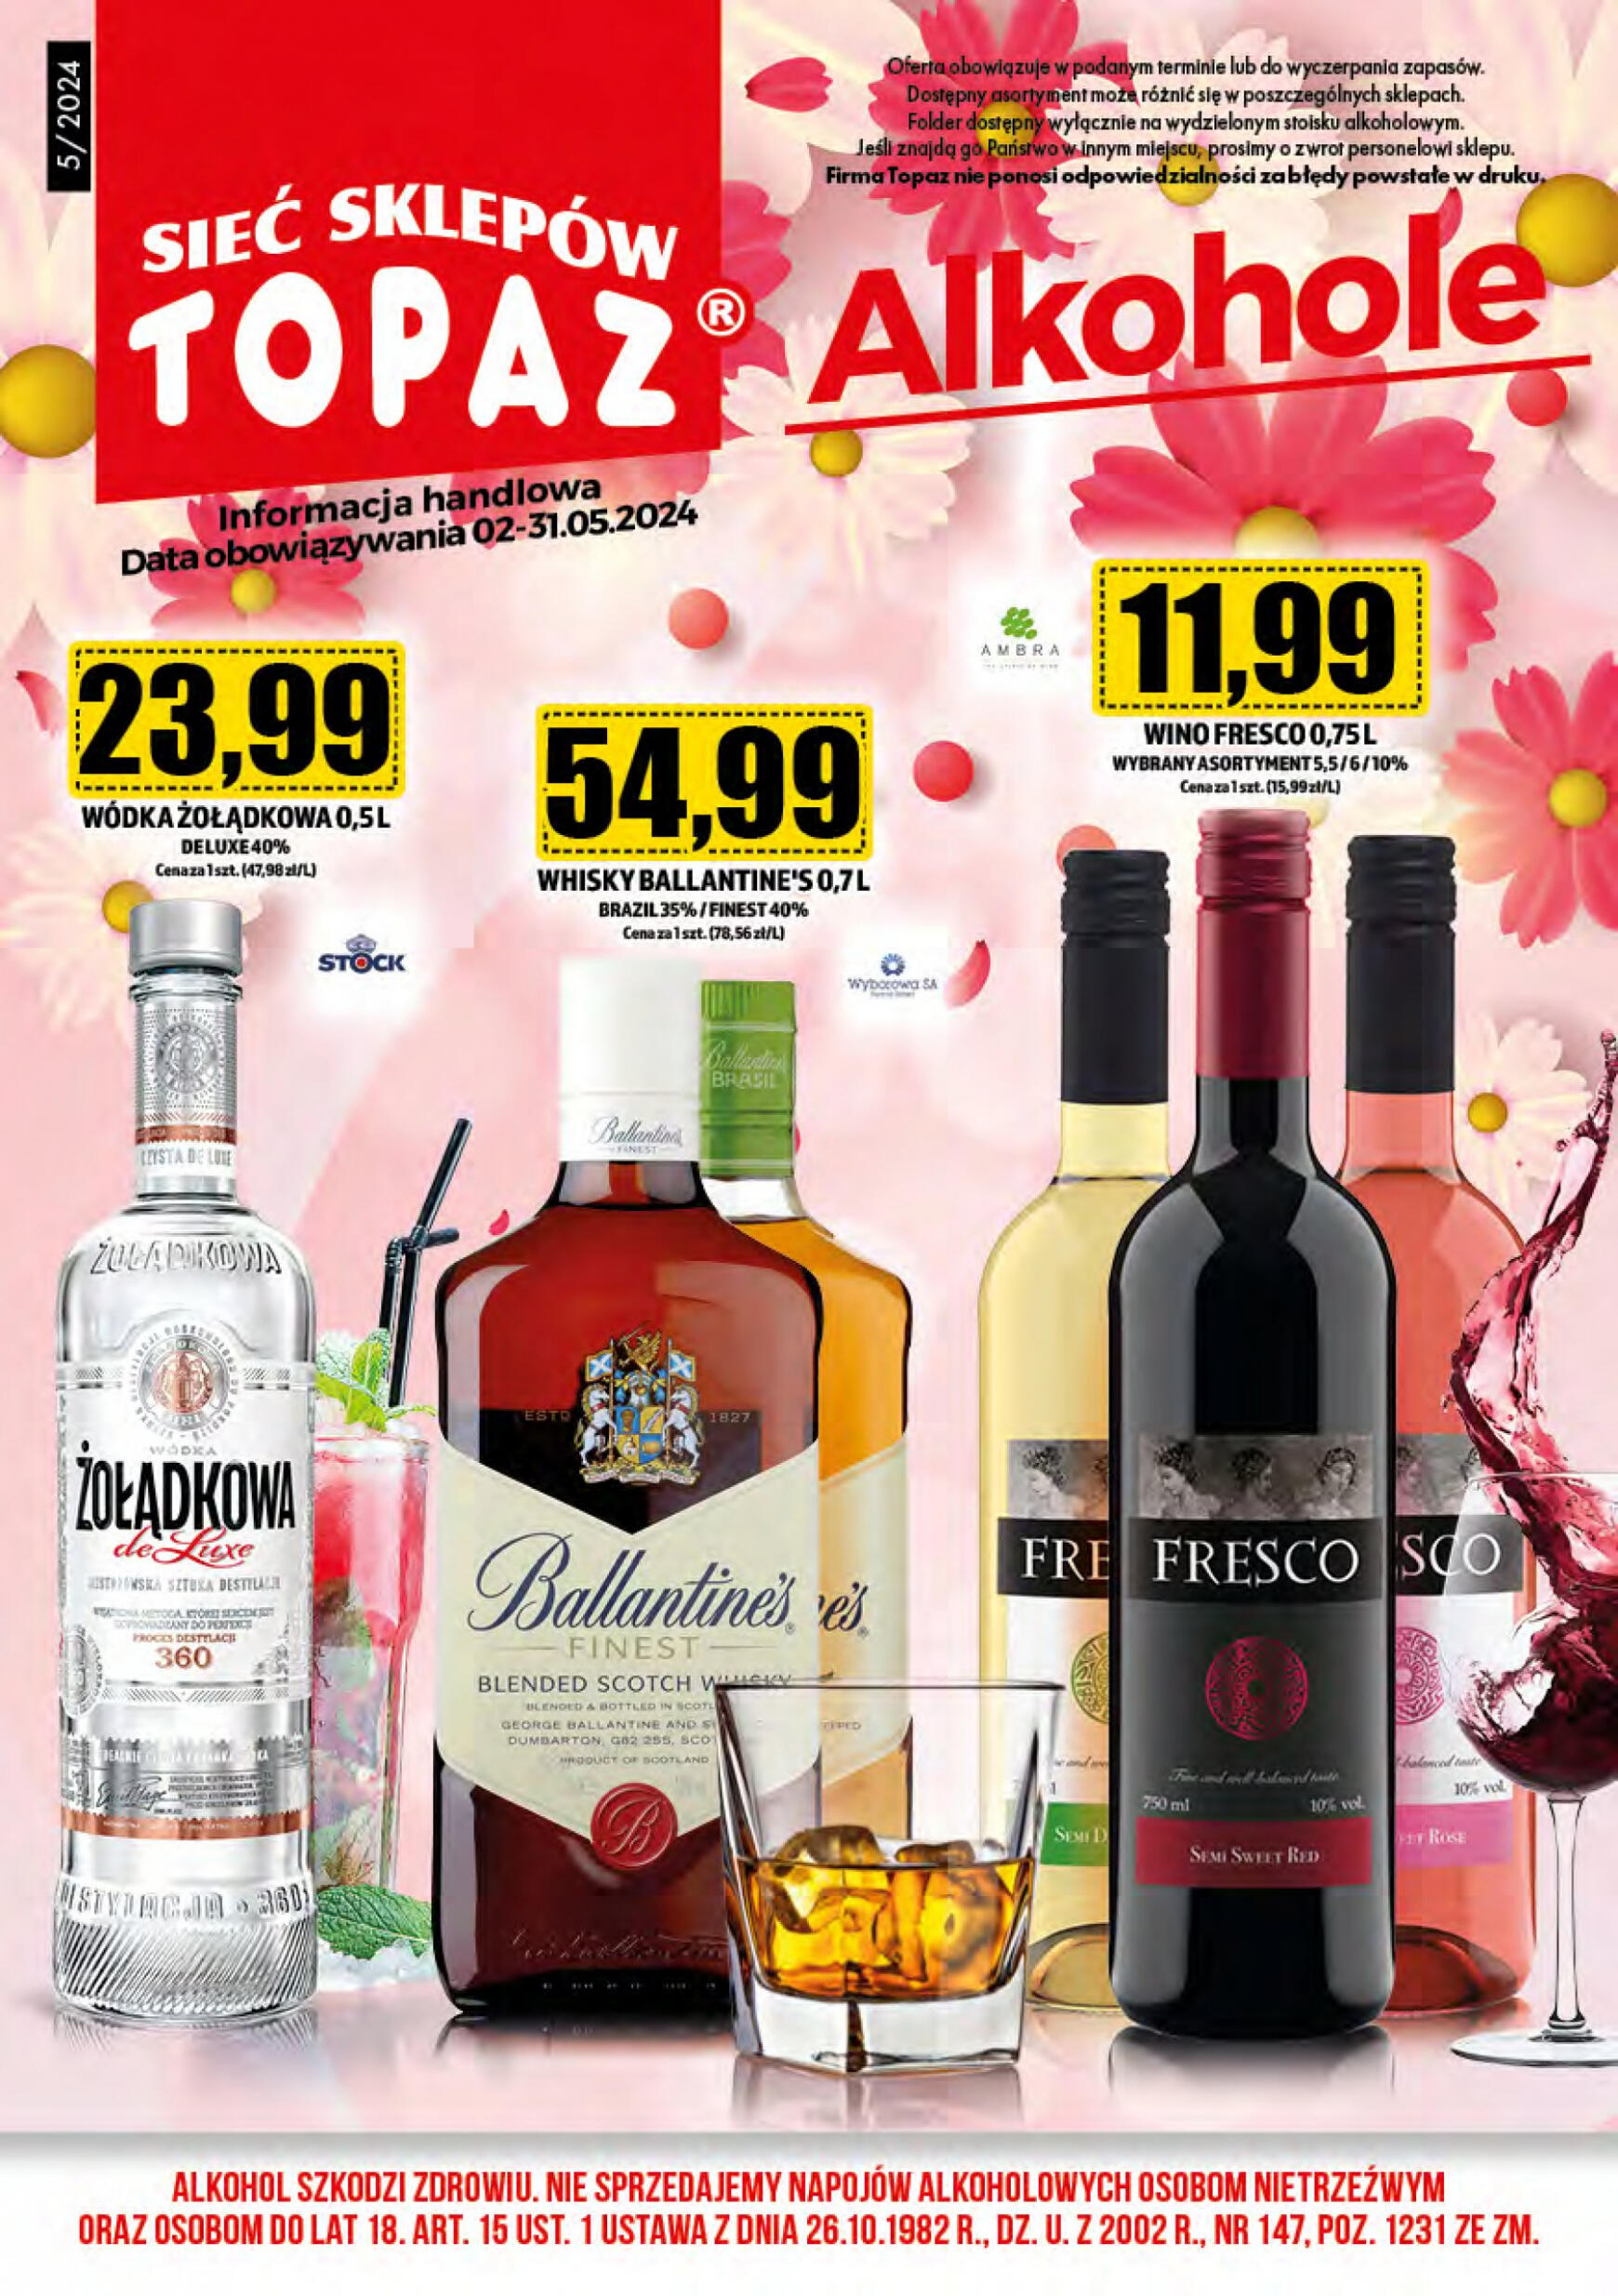 topaz24 - Topaz24 - Alkohole gazetka aktualna ważna od 02.05. - 31.05. - page: 1